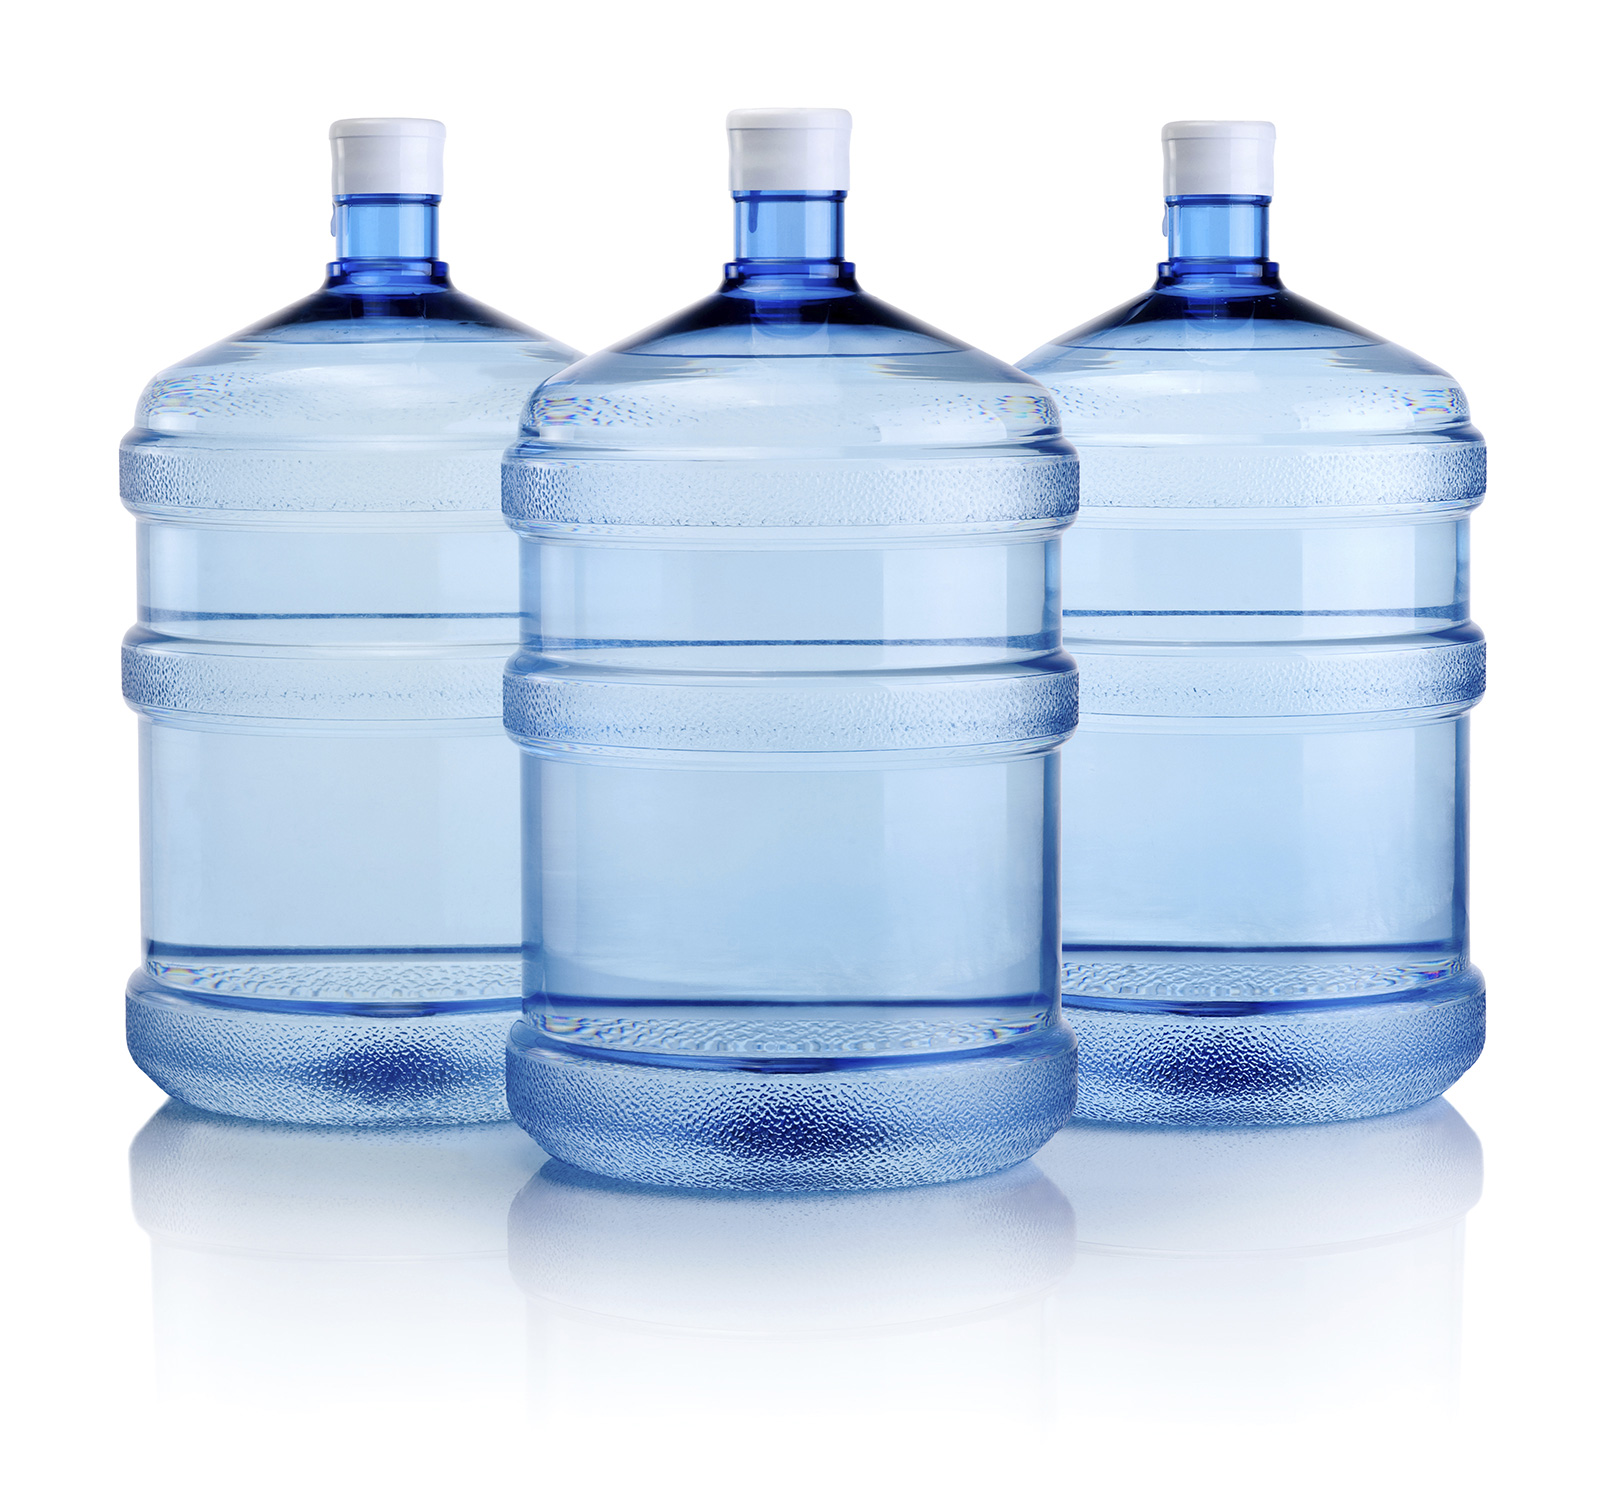 Питьевая вода 6 литров. Бутилированная вода. Бутылка для воды. Вода в бутылях. Бутилированная вода бутылка.